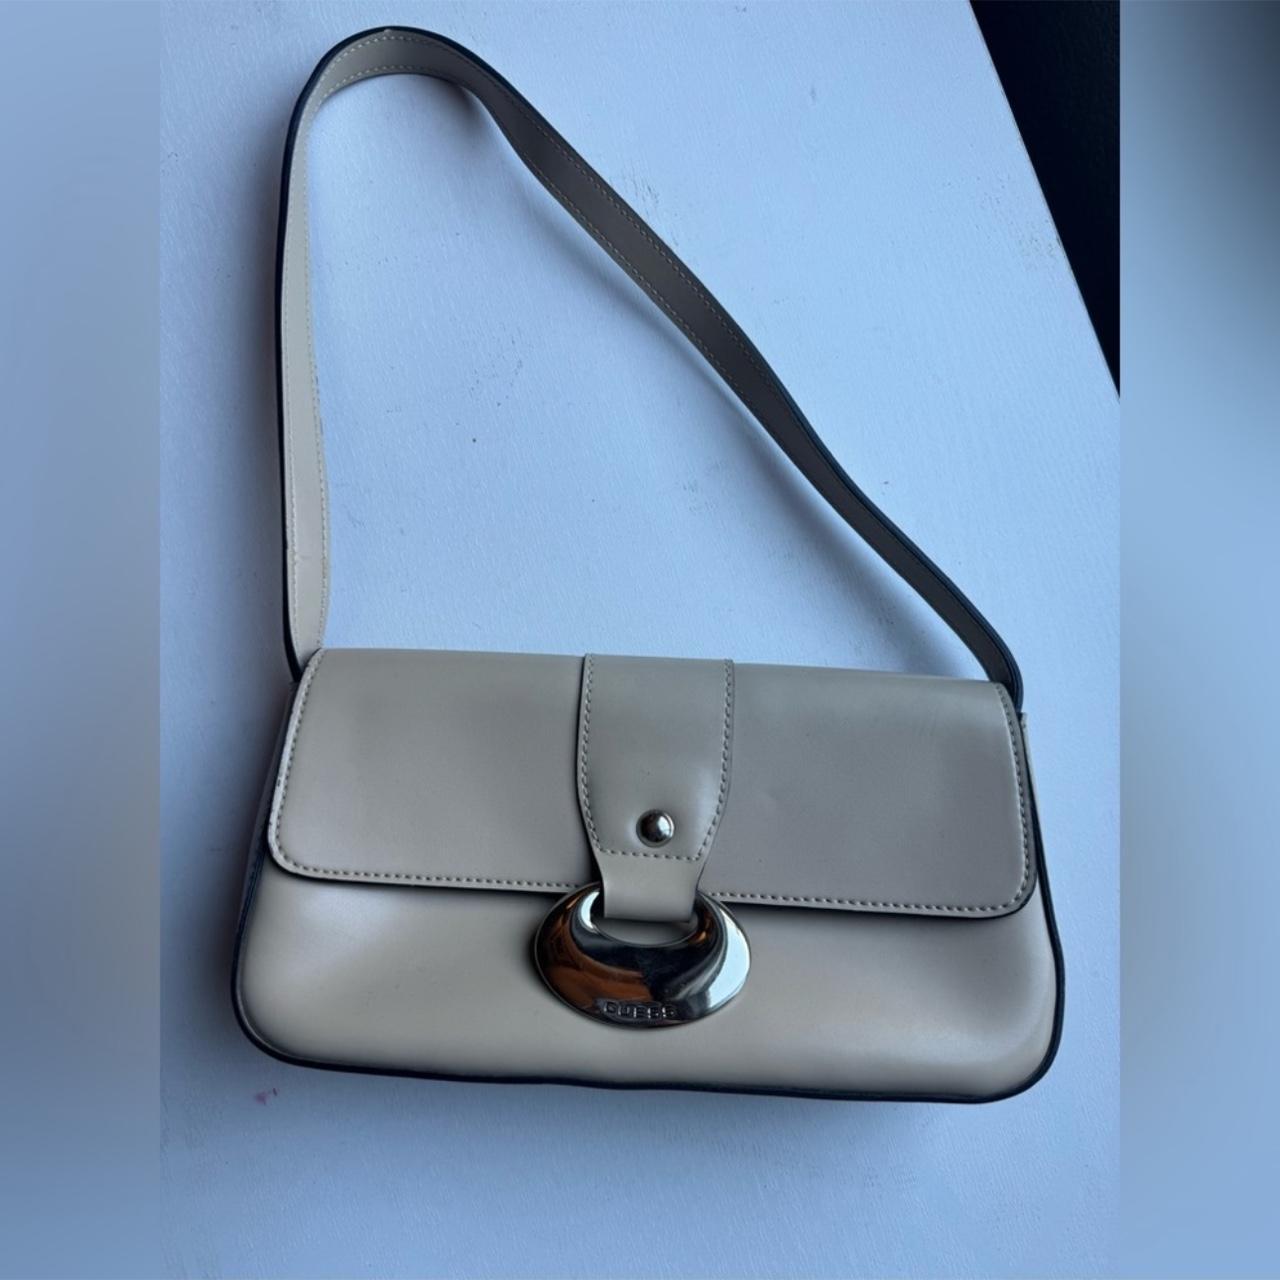 Guess purse | Guess purses, Guess handbags, Purses